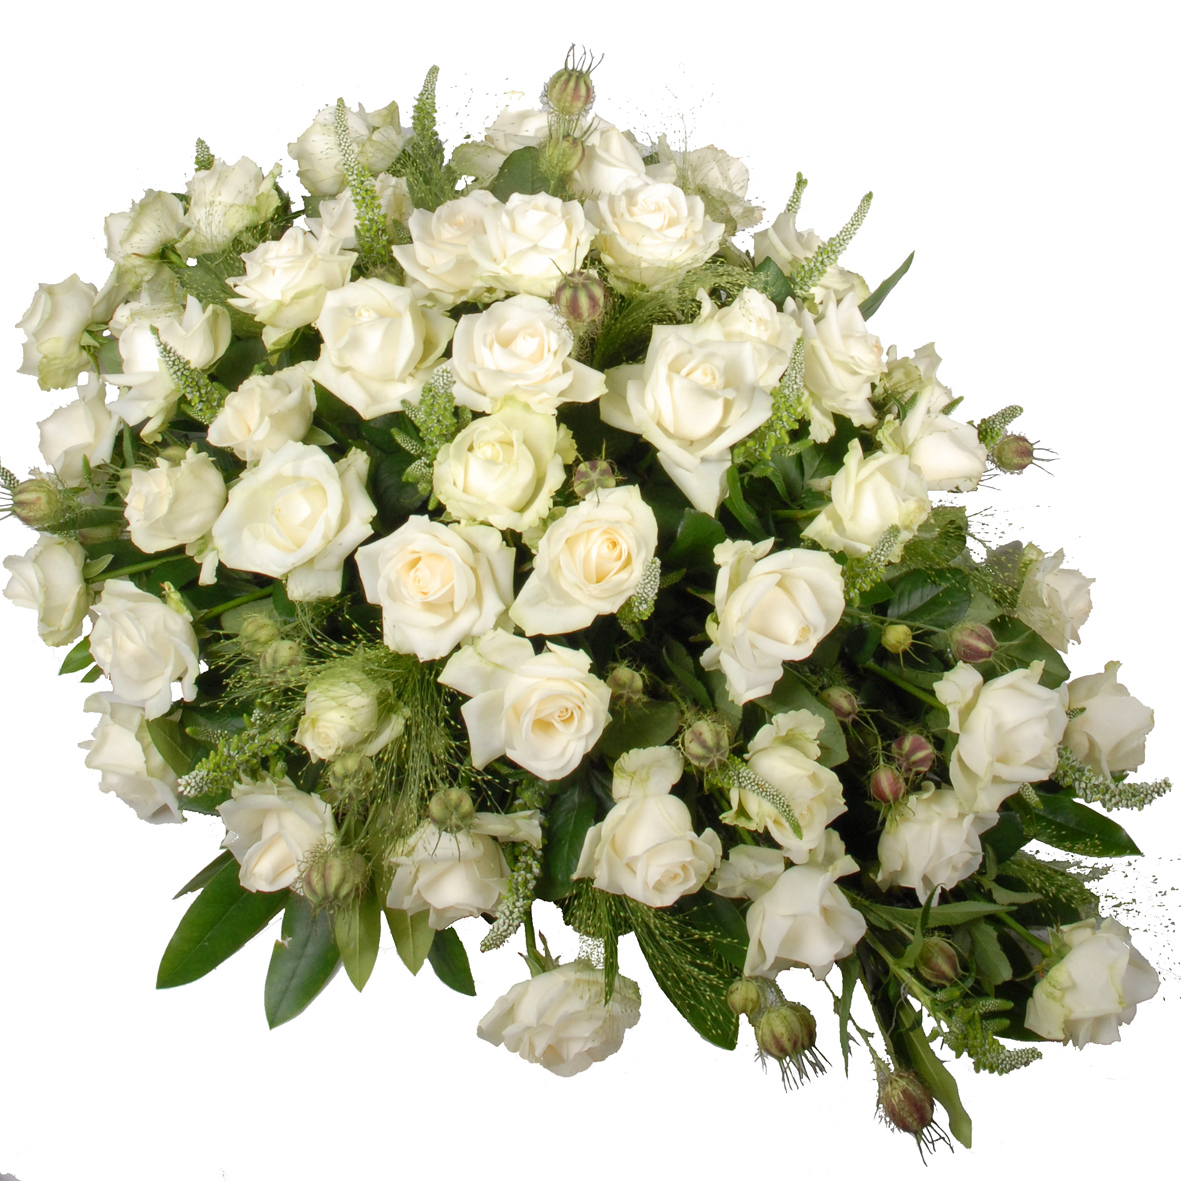 Rouwstuk met alleen witte rozen